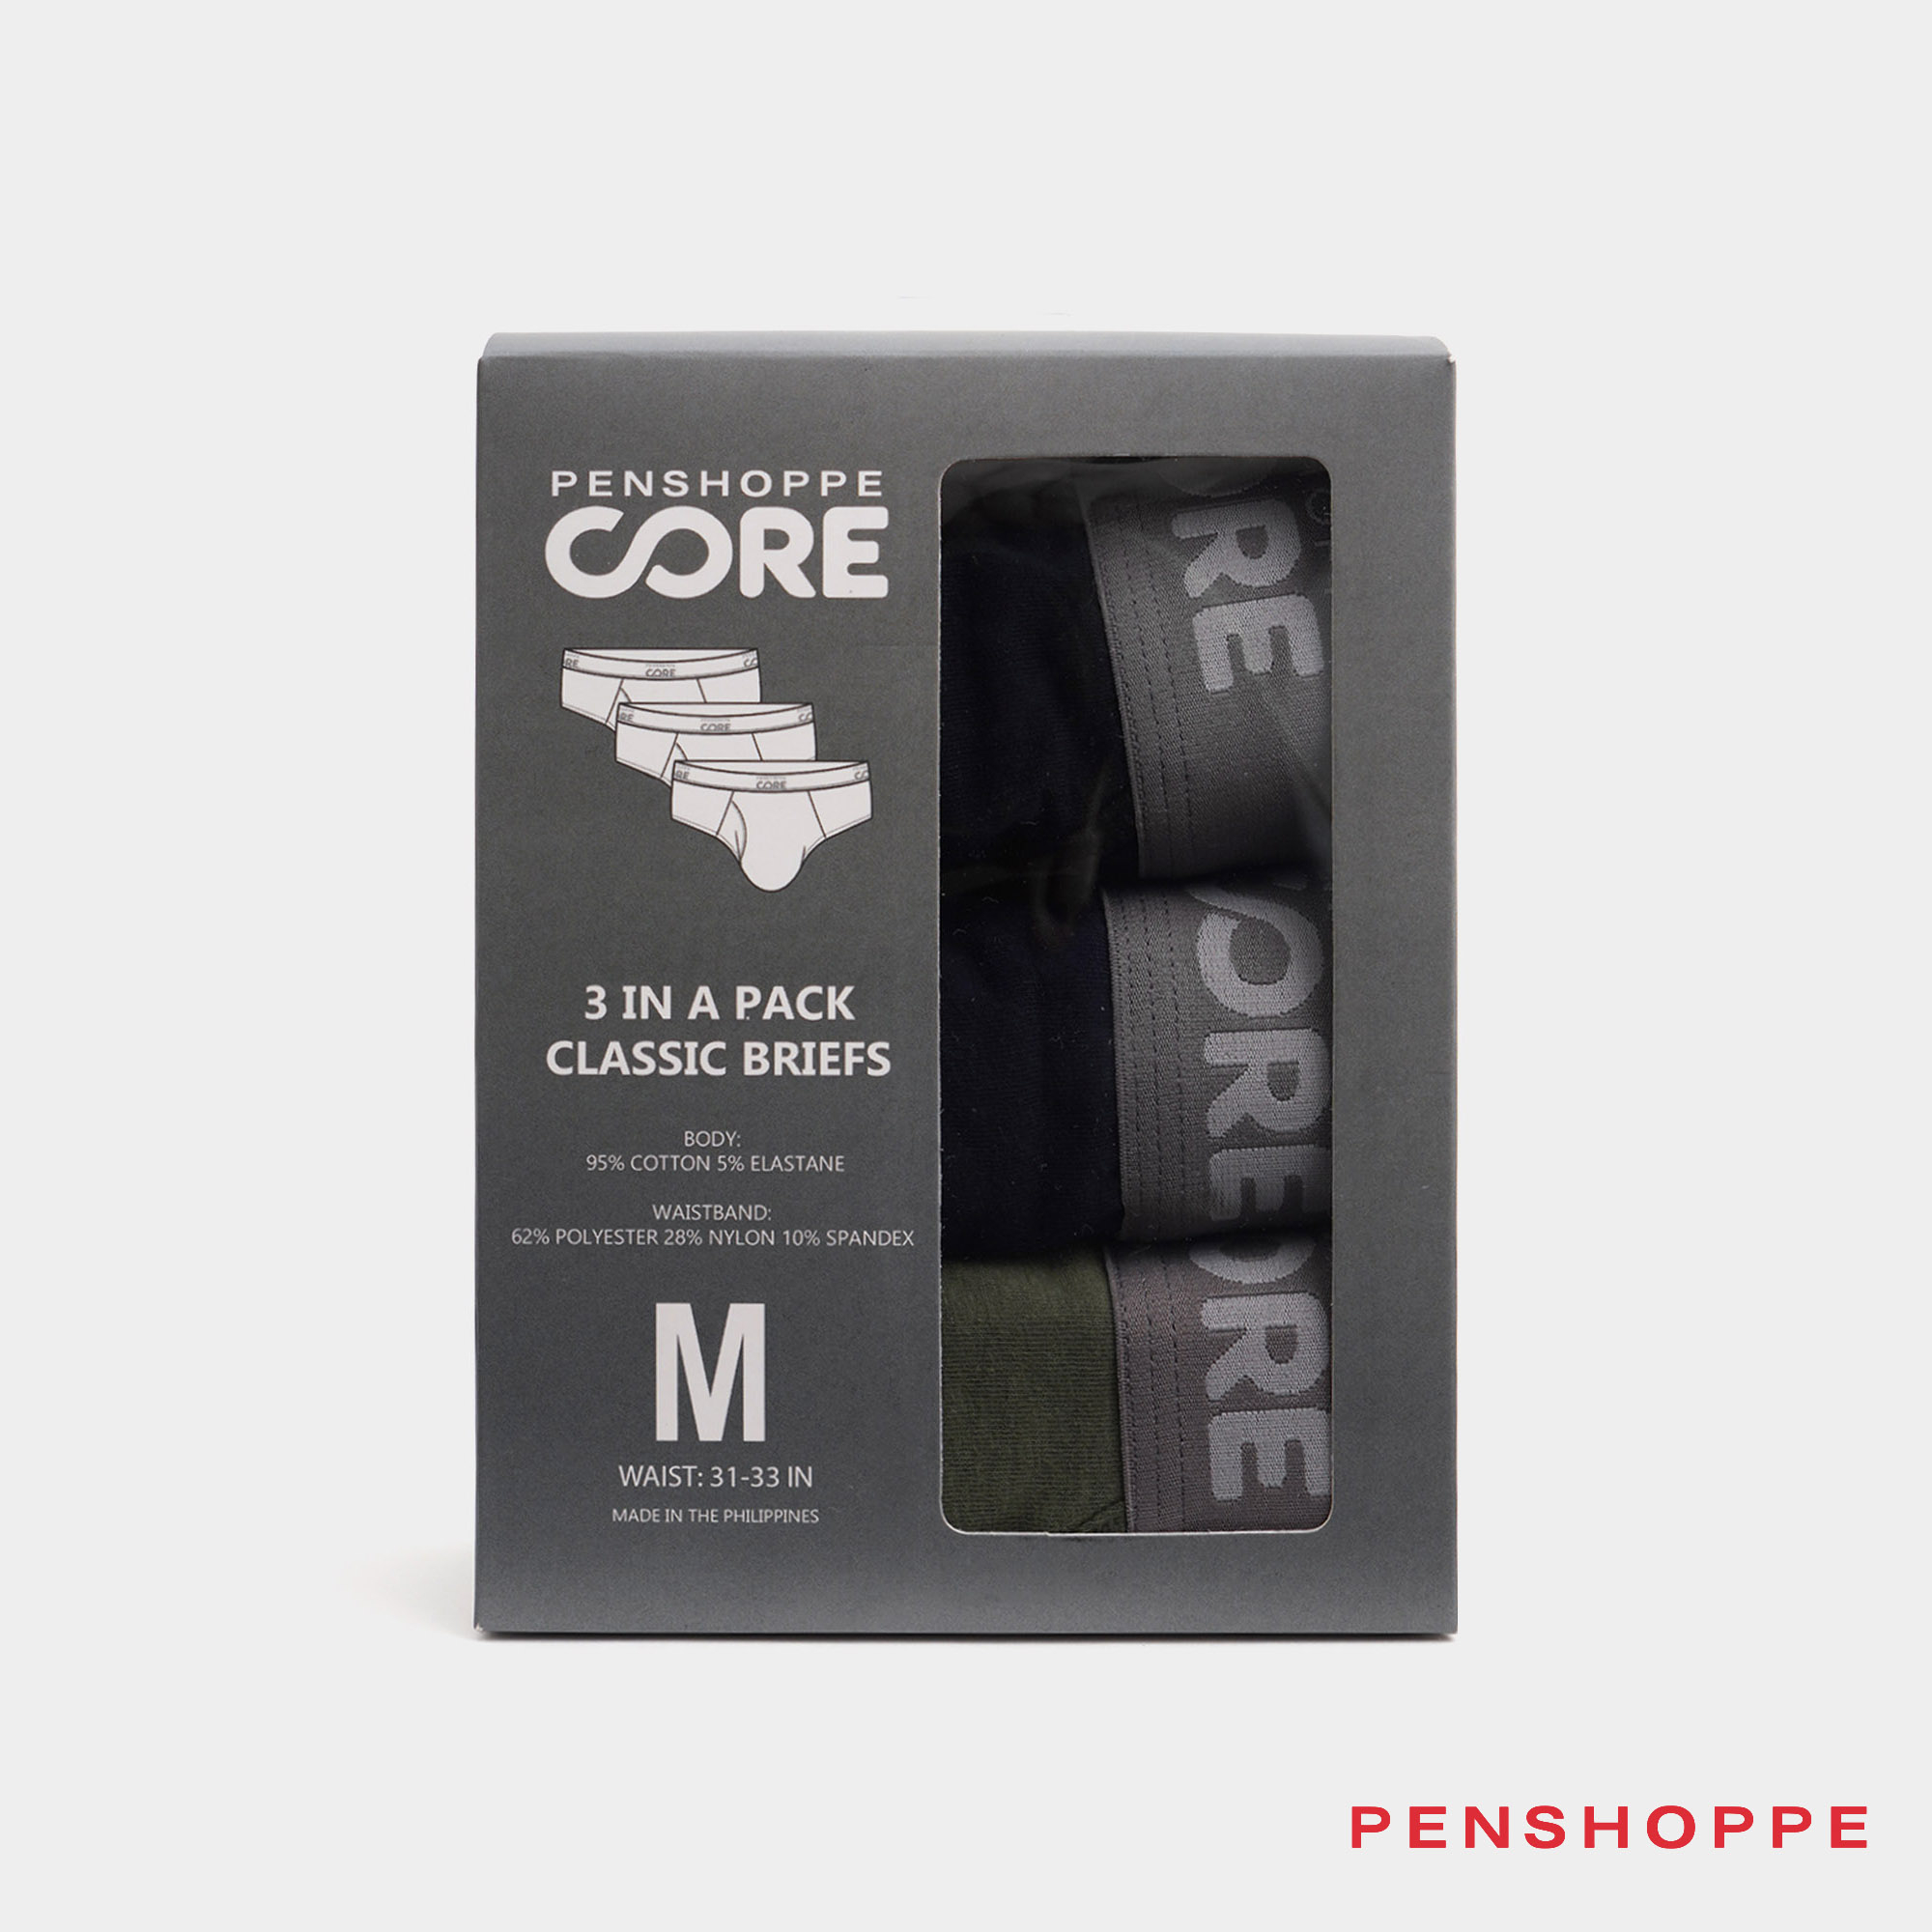 Penshoppe Core Men's Classic Briefs